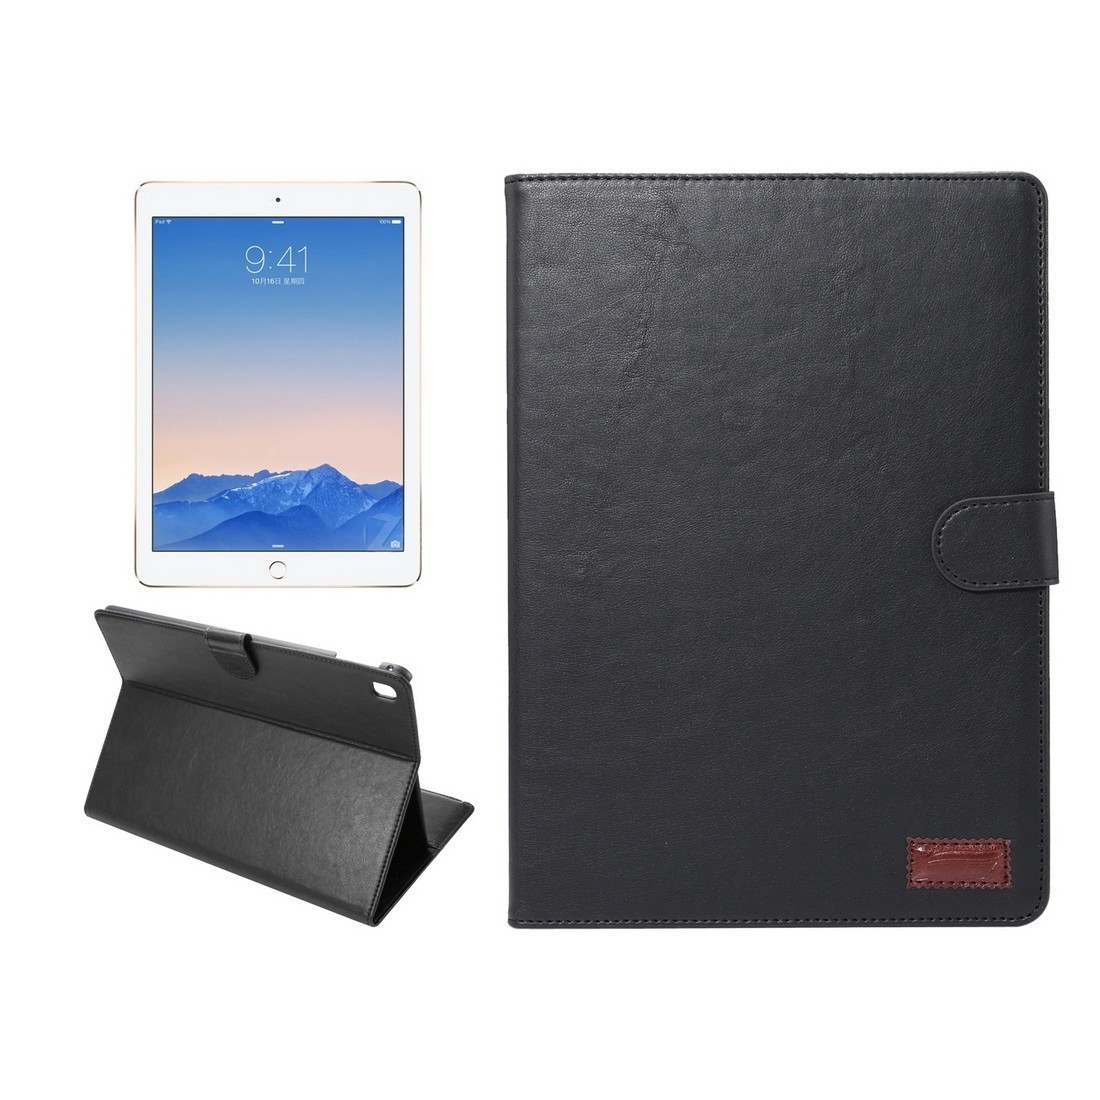 Кожаный чехол с отсеками для бумаг и визиток для iPad Pro 9.7 (черный)